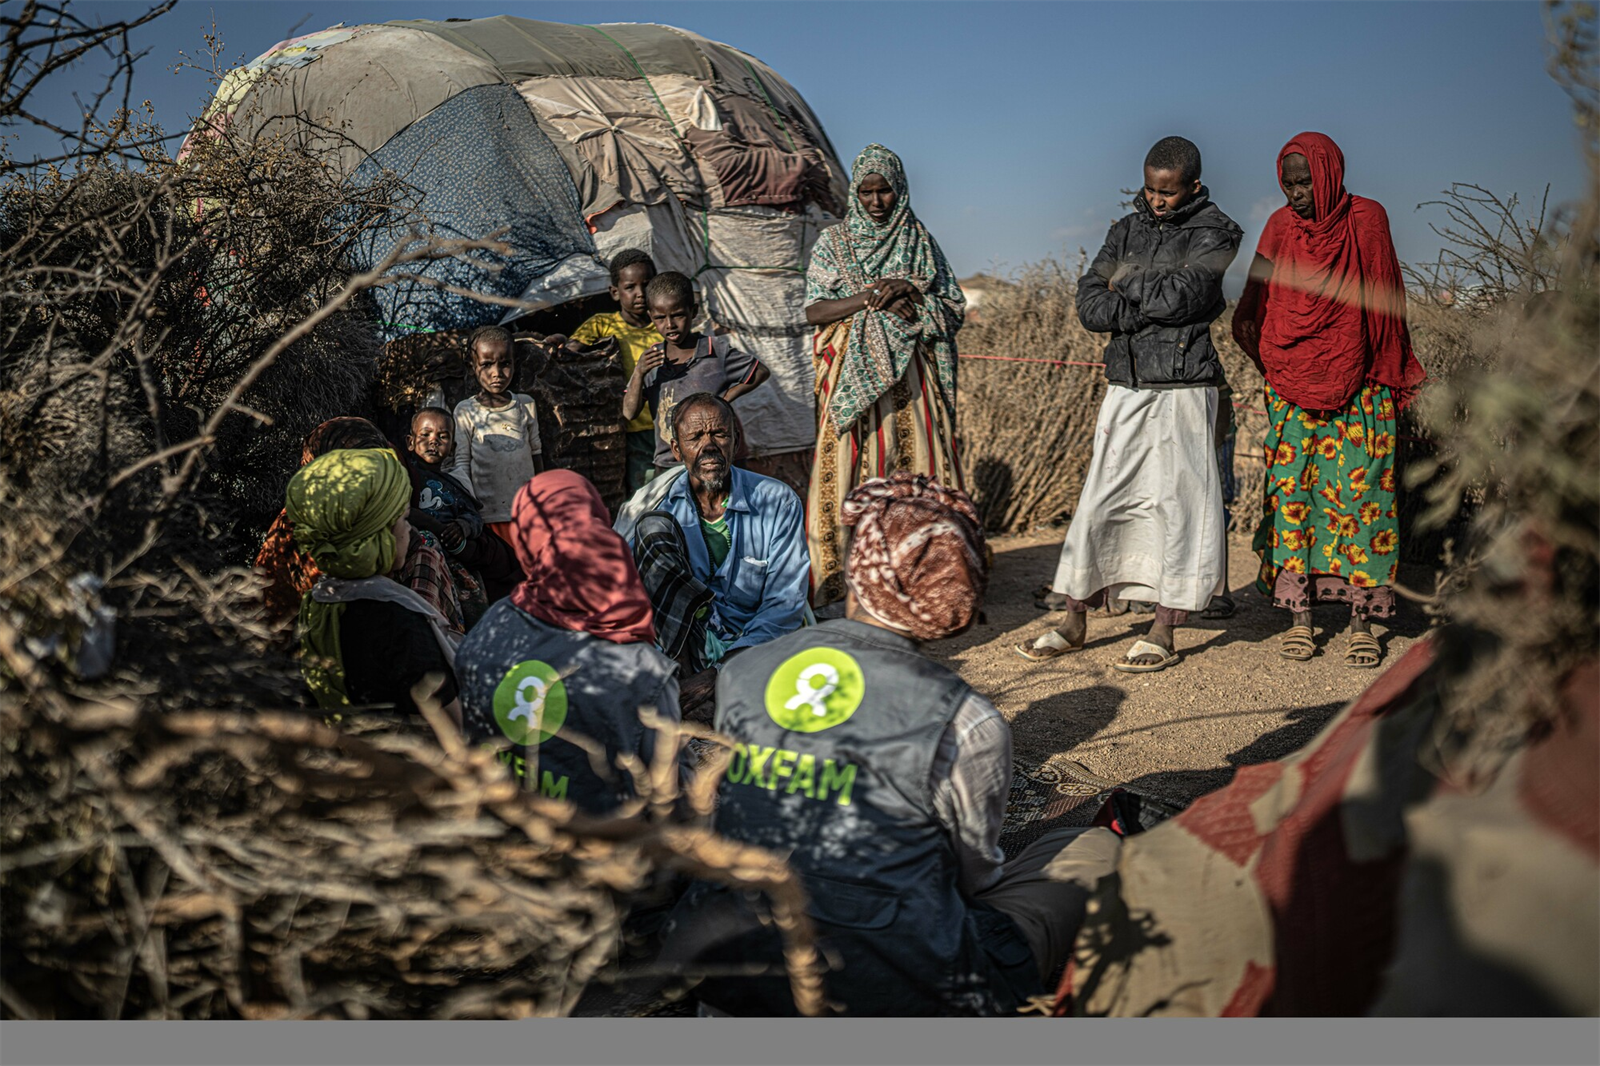 Droogte in Somalië - Oxfam inventariseert welke hulp nodig is